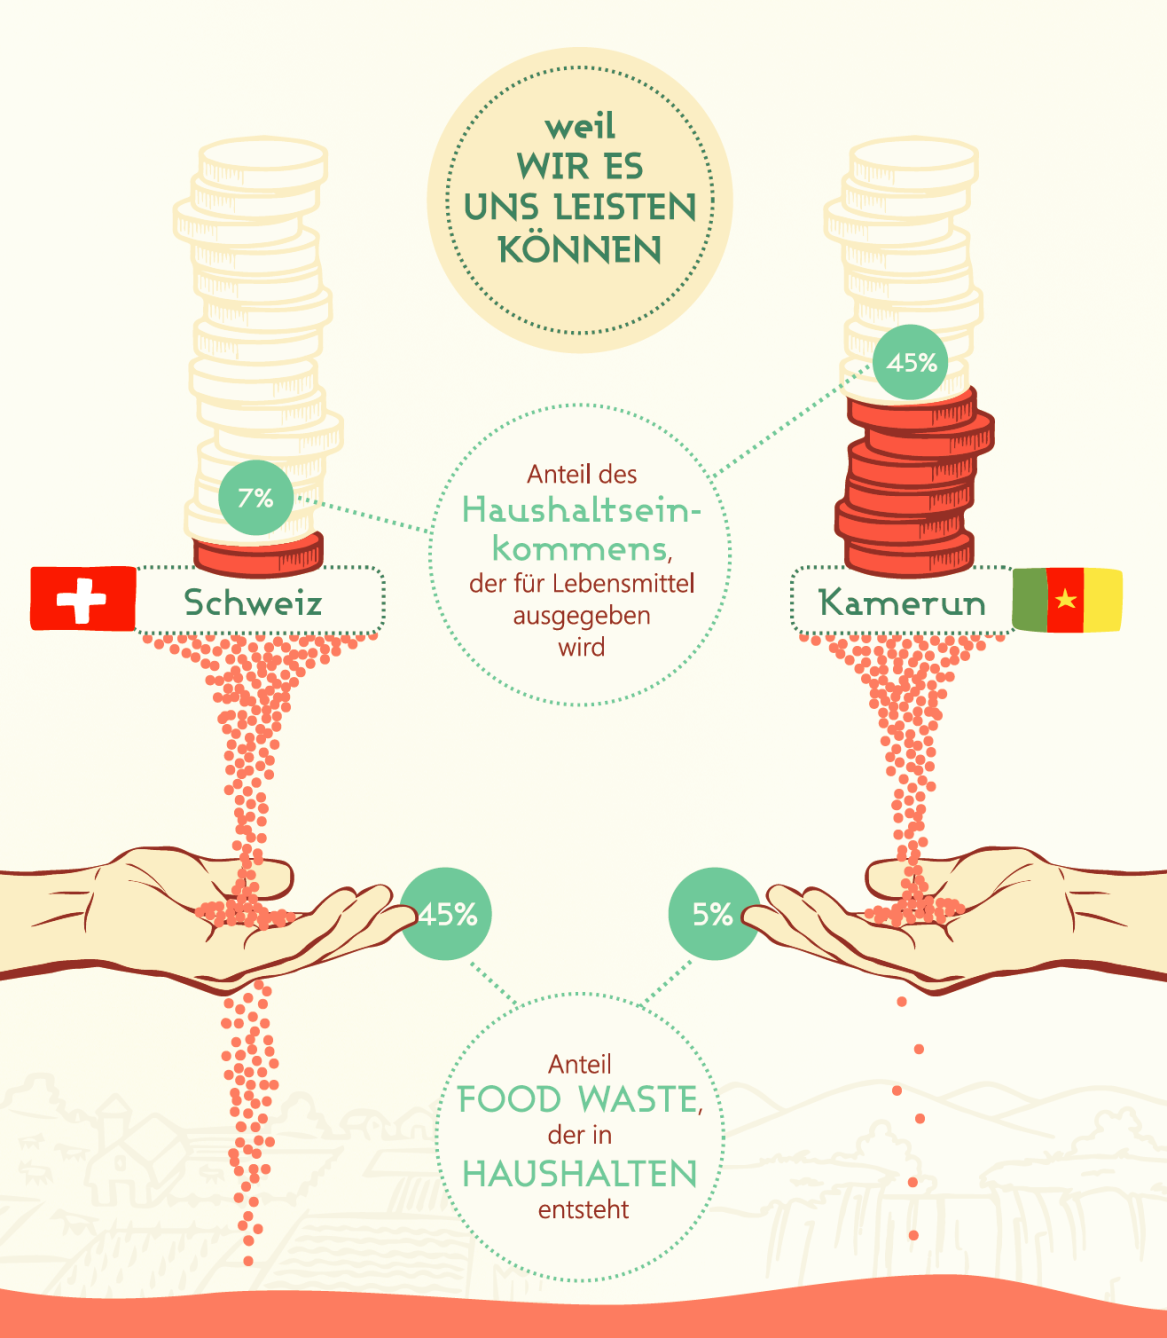 Enlarged view: Vergleich Schweiz - Kamerun